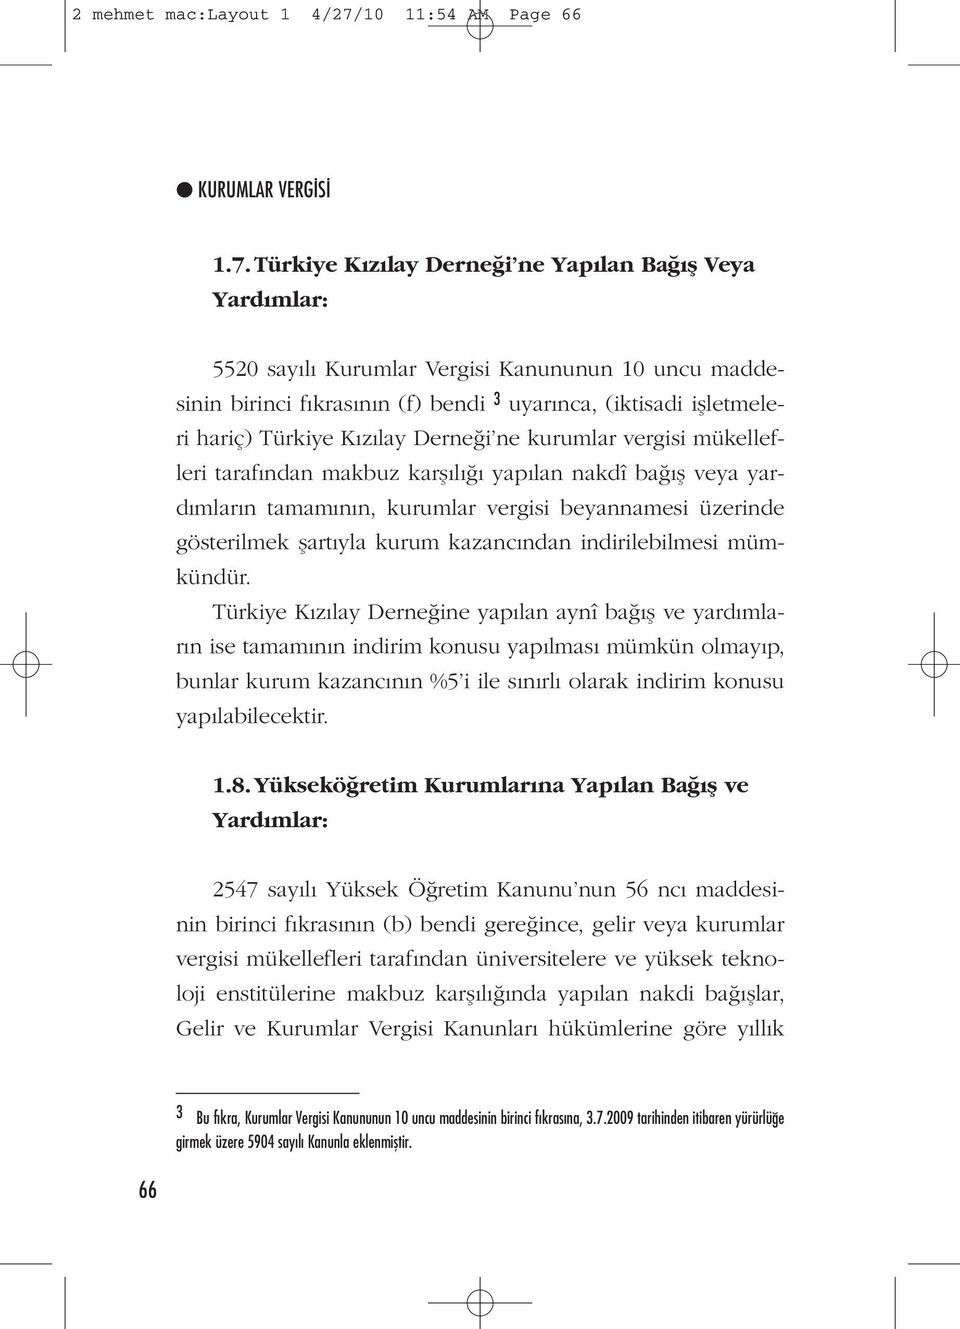 Türkiye Kızılay Derneği ne Yapılan Bağış Veya Yardımlar: 5520 sayılı Kurumlar Vergisi Kanununun 10 uncu maddesinin birinci fıkrasının (f) bendi 3 uyarınca, (iktisadi işletmeleri hariç) Türkiye